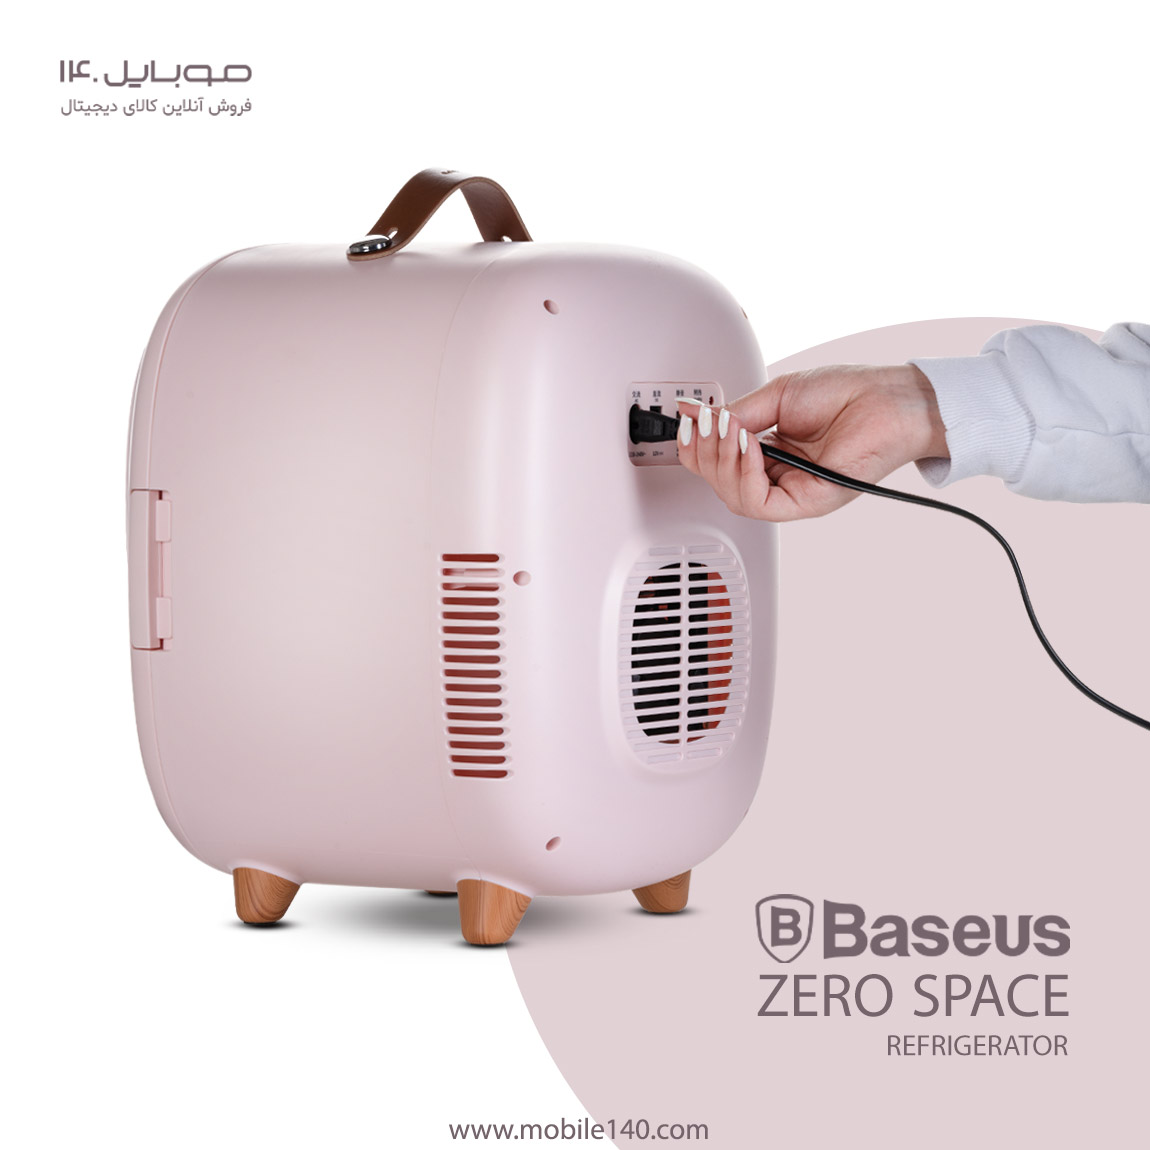 Baseus mini refrigerator and heater model Zero Space Refrigerato 4